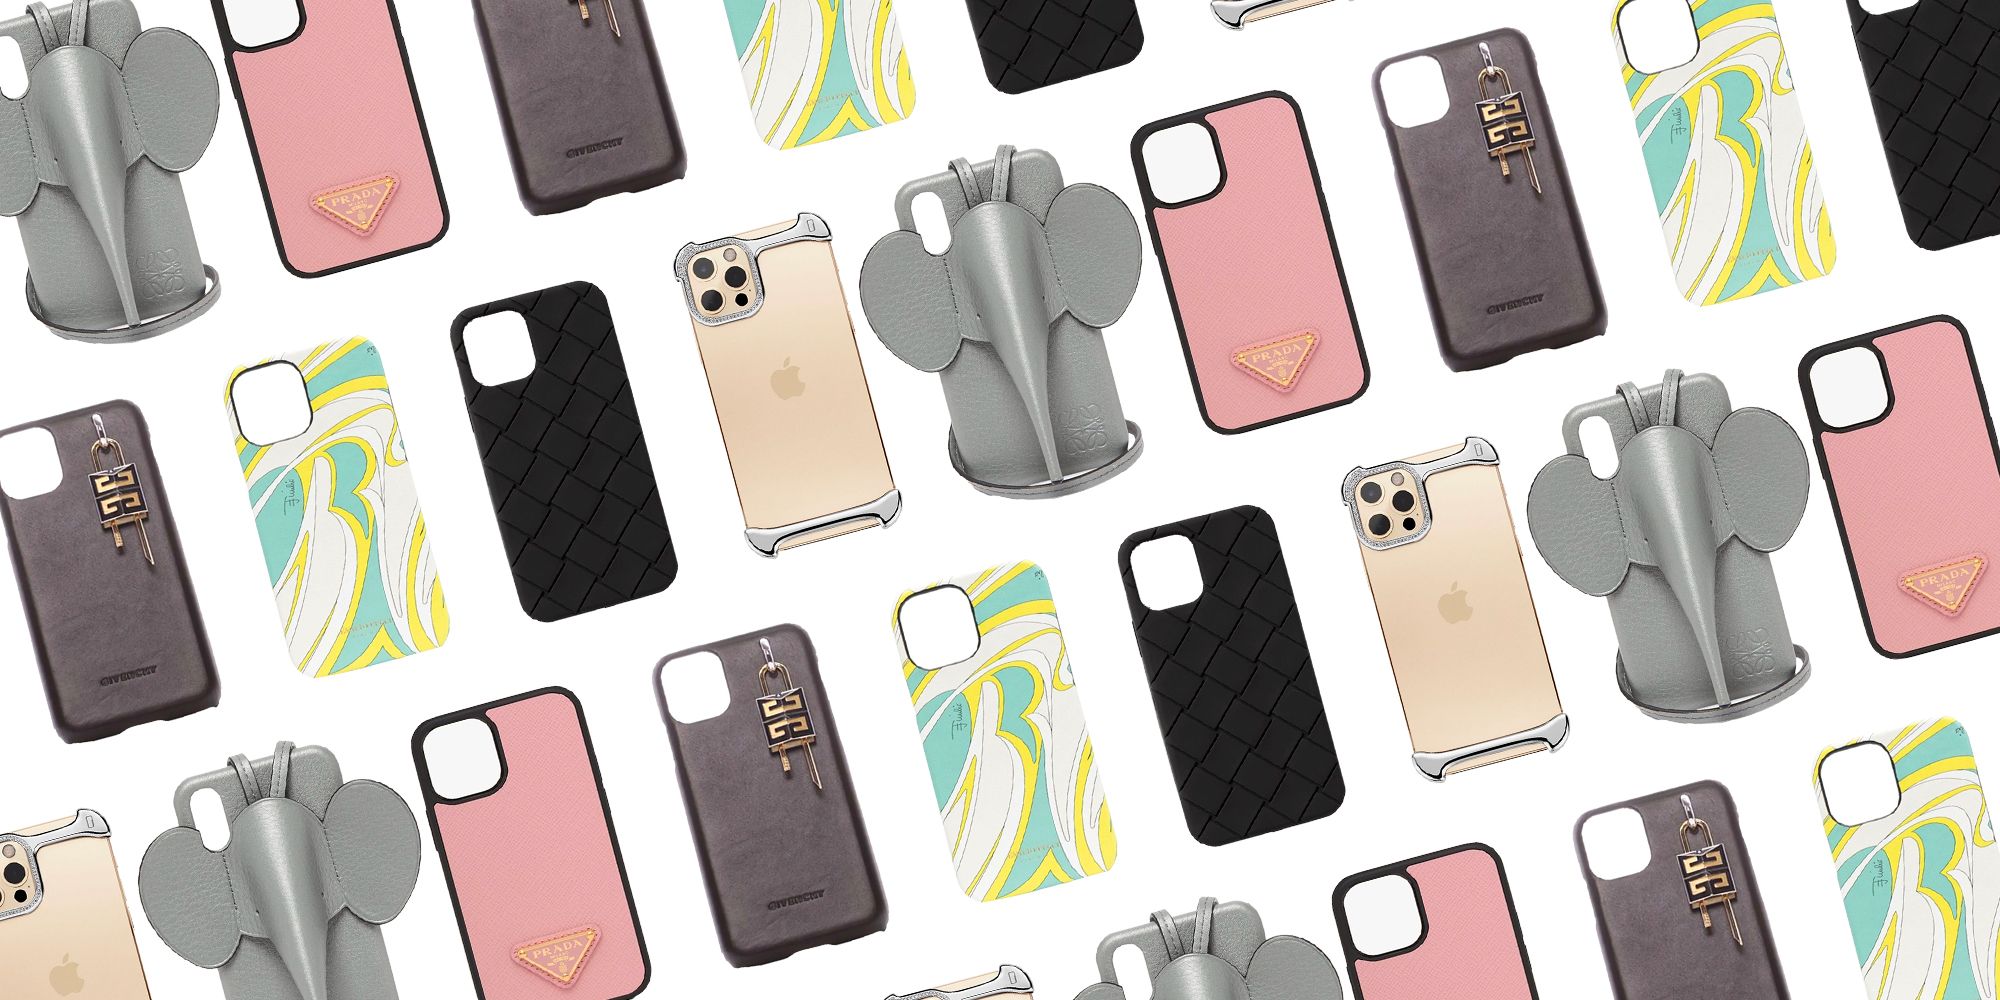 Men's Designer iPhone Cases, Mobile Smartphone